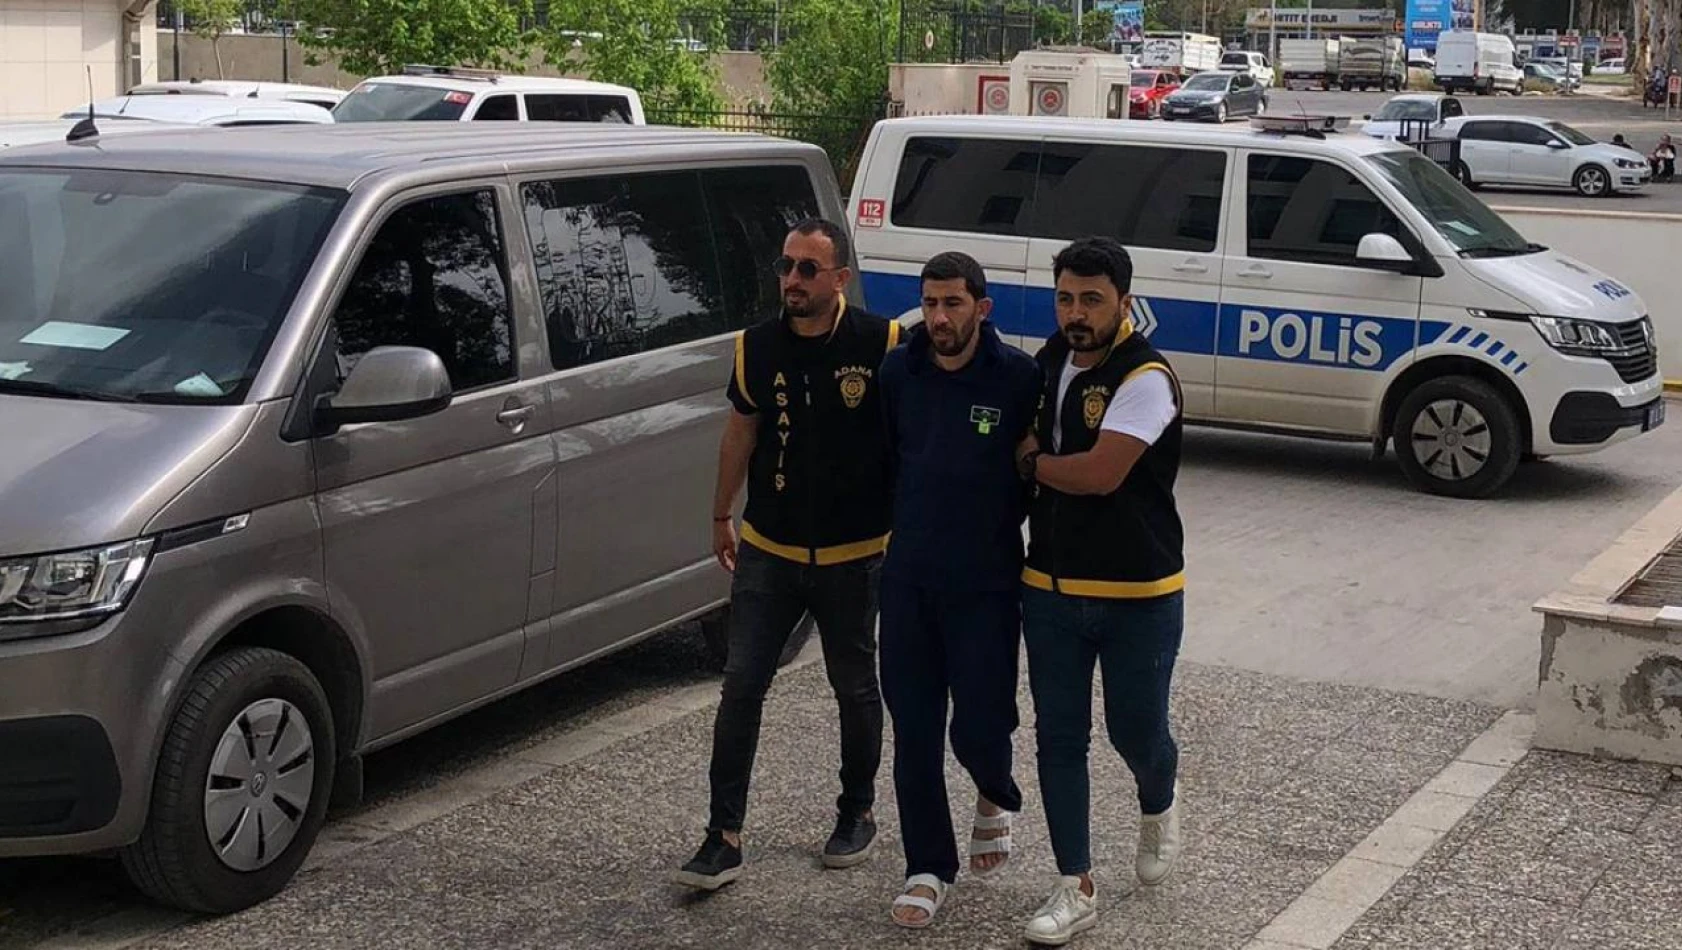 Adana'da Husumetlisini Öldürdü! - 'Öyle Bir Amacım Yoktu' dedi